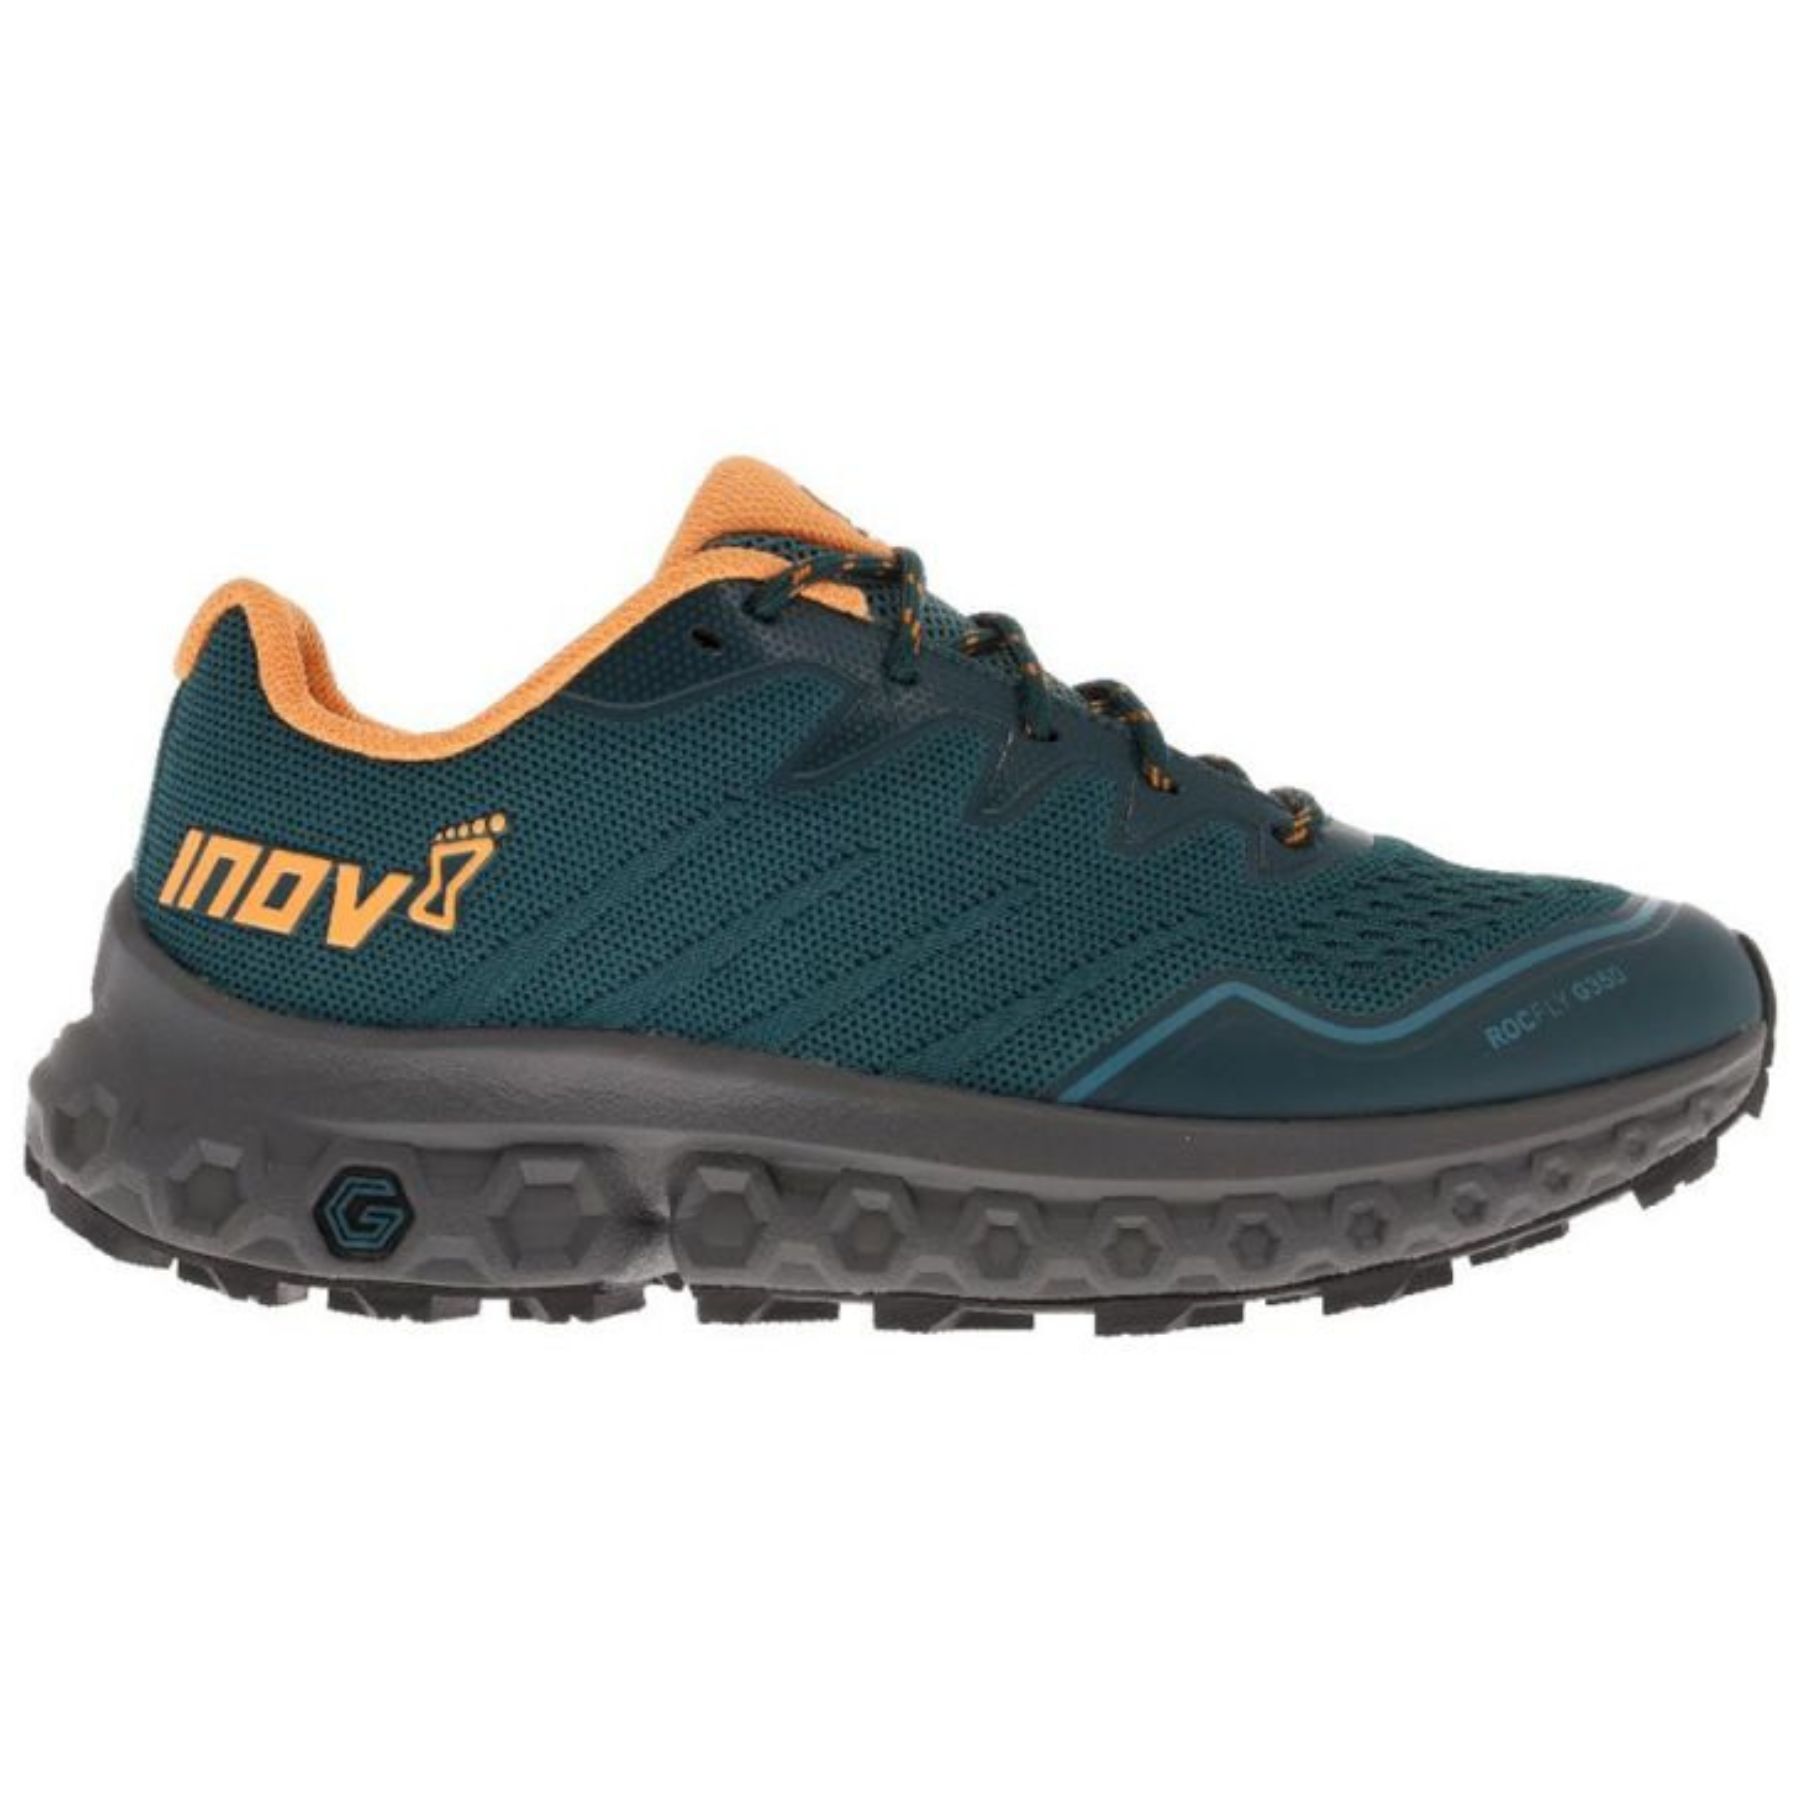 Inov-8 Rocfly G 350 - Walking shoes - Women's